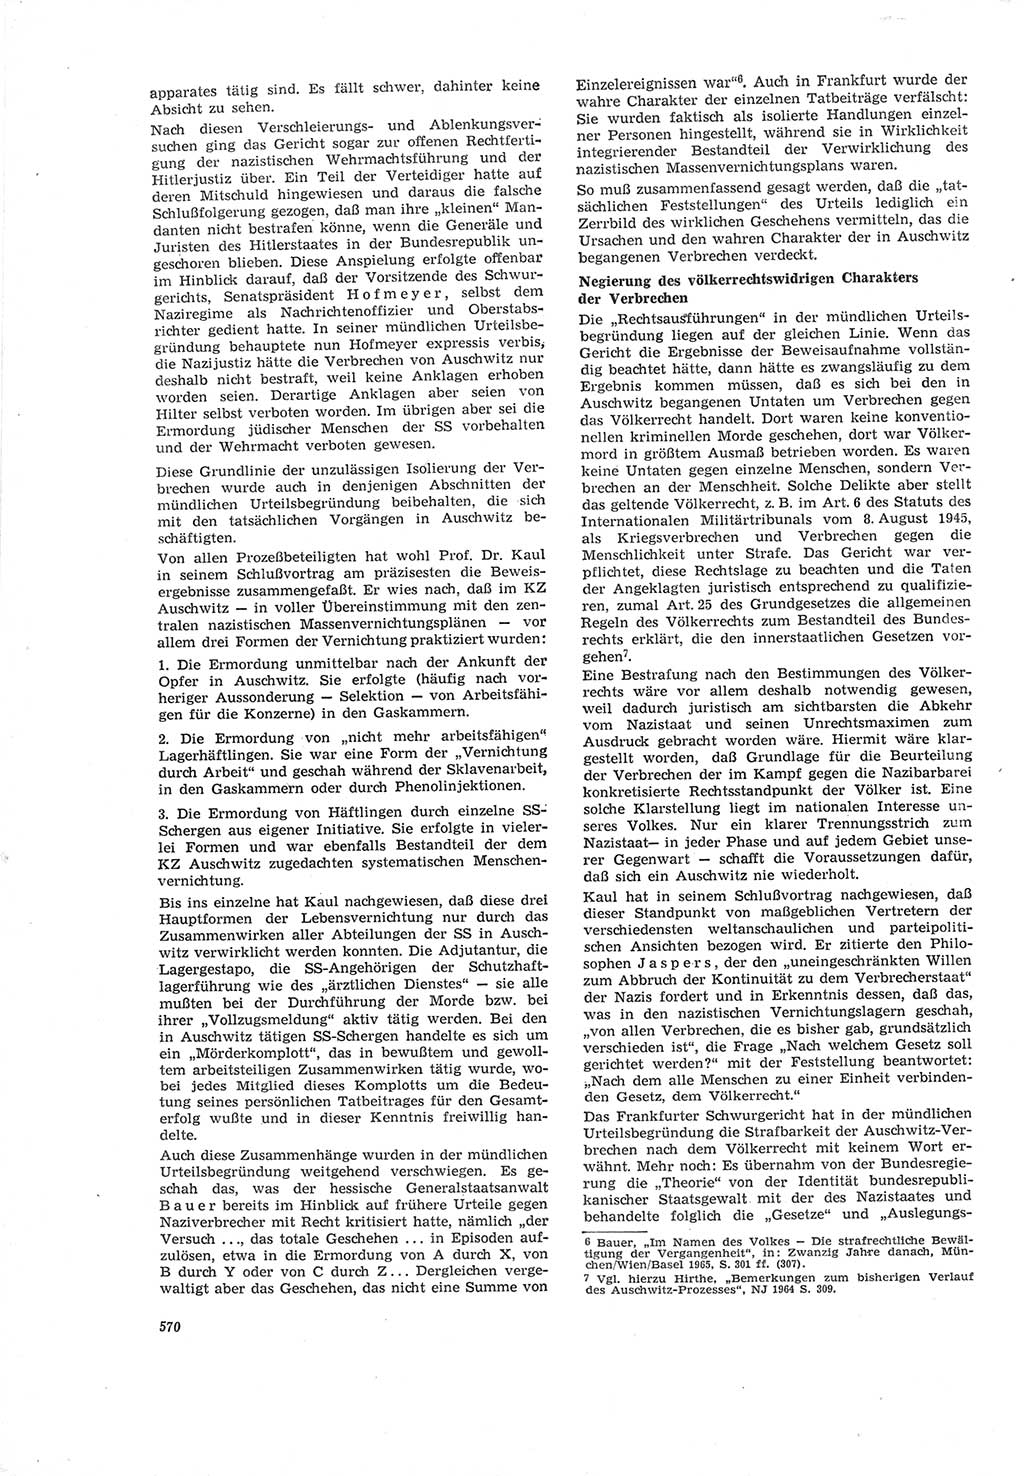 Neue Justiz (NJ), Zeitschrift für Recht und Rechtswissenschaft [Deutsche Demokratische Republik (DDR)], 19. Jahrgang 1965, Seite 570 (NJ DDR 1965, S. 570)